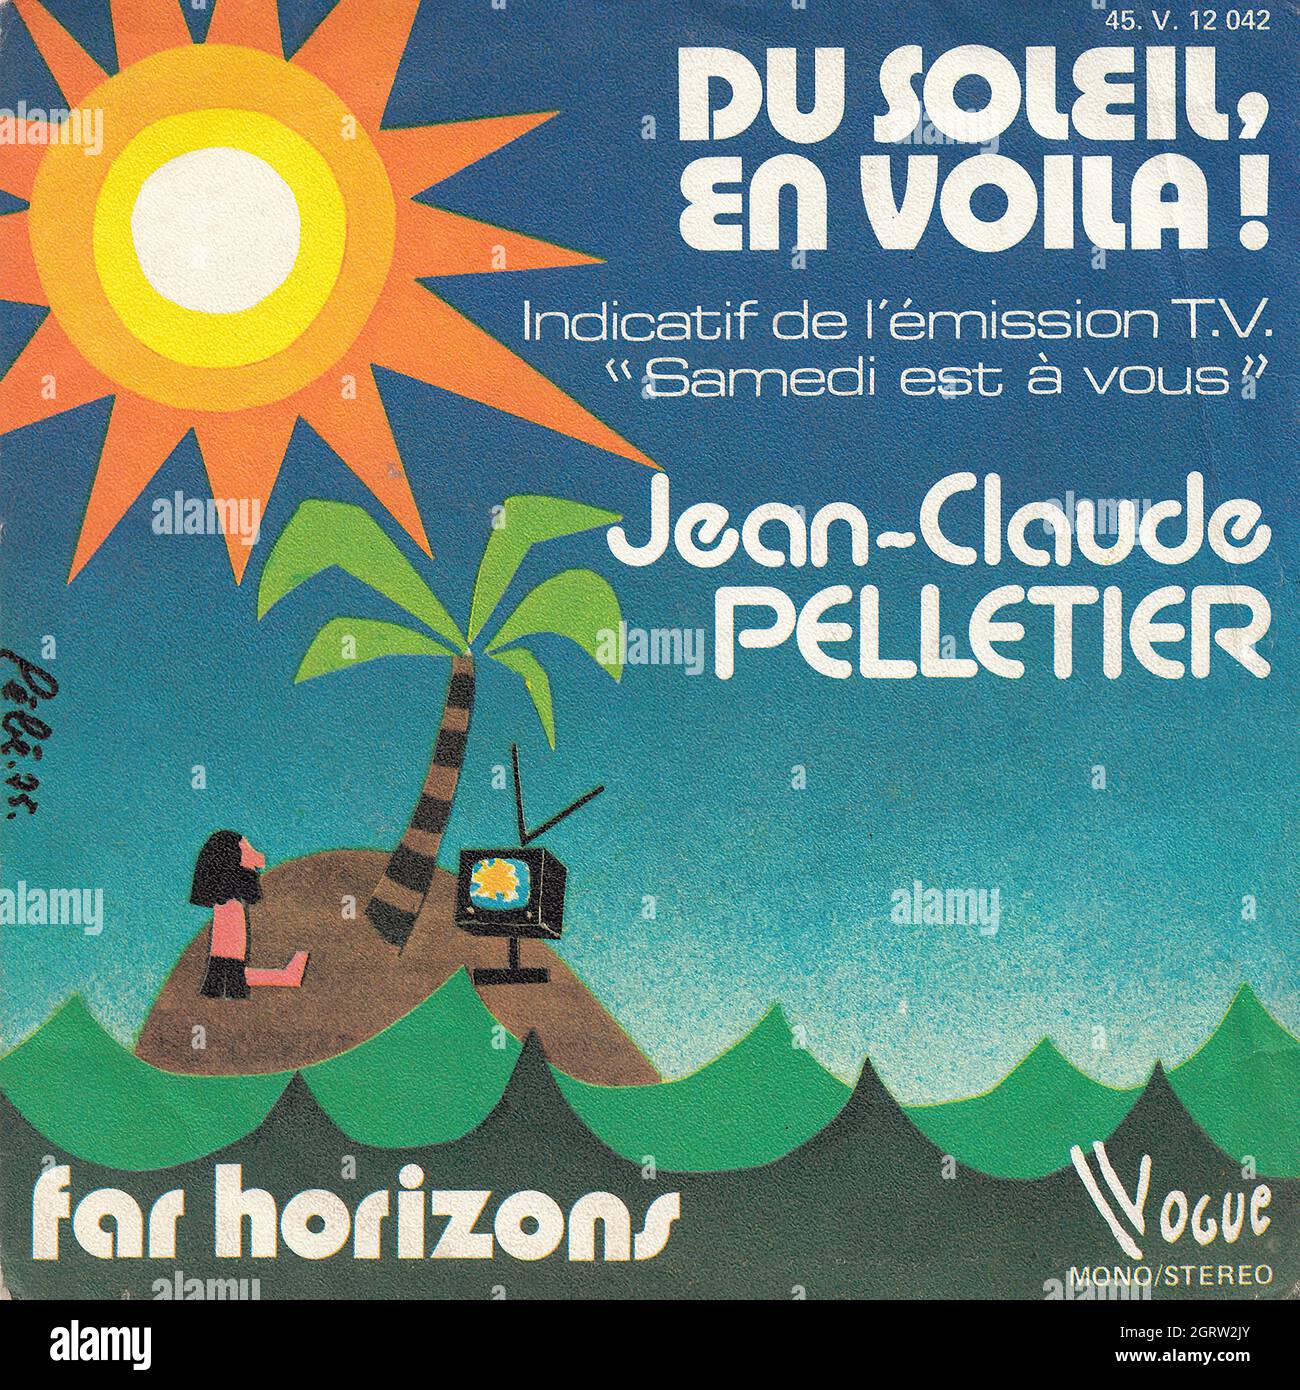 Jean-Claude Pelletier - Du soleil, en voila ! - Far horizons 45rpm - Vintage Vinyl Record Cover Stock Photo